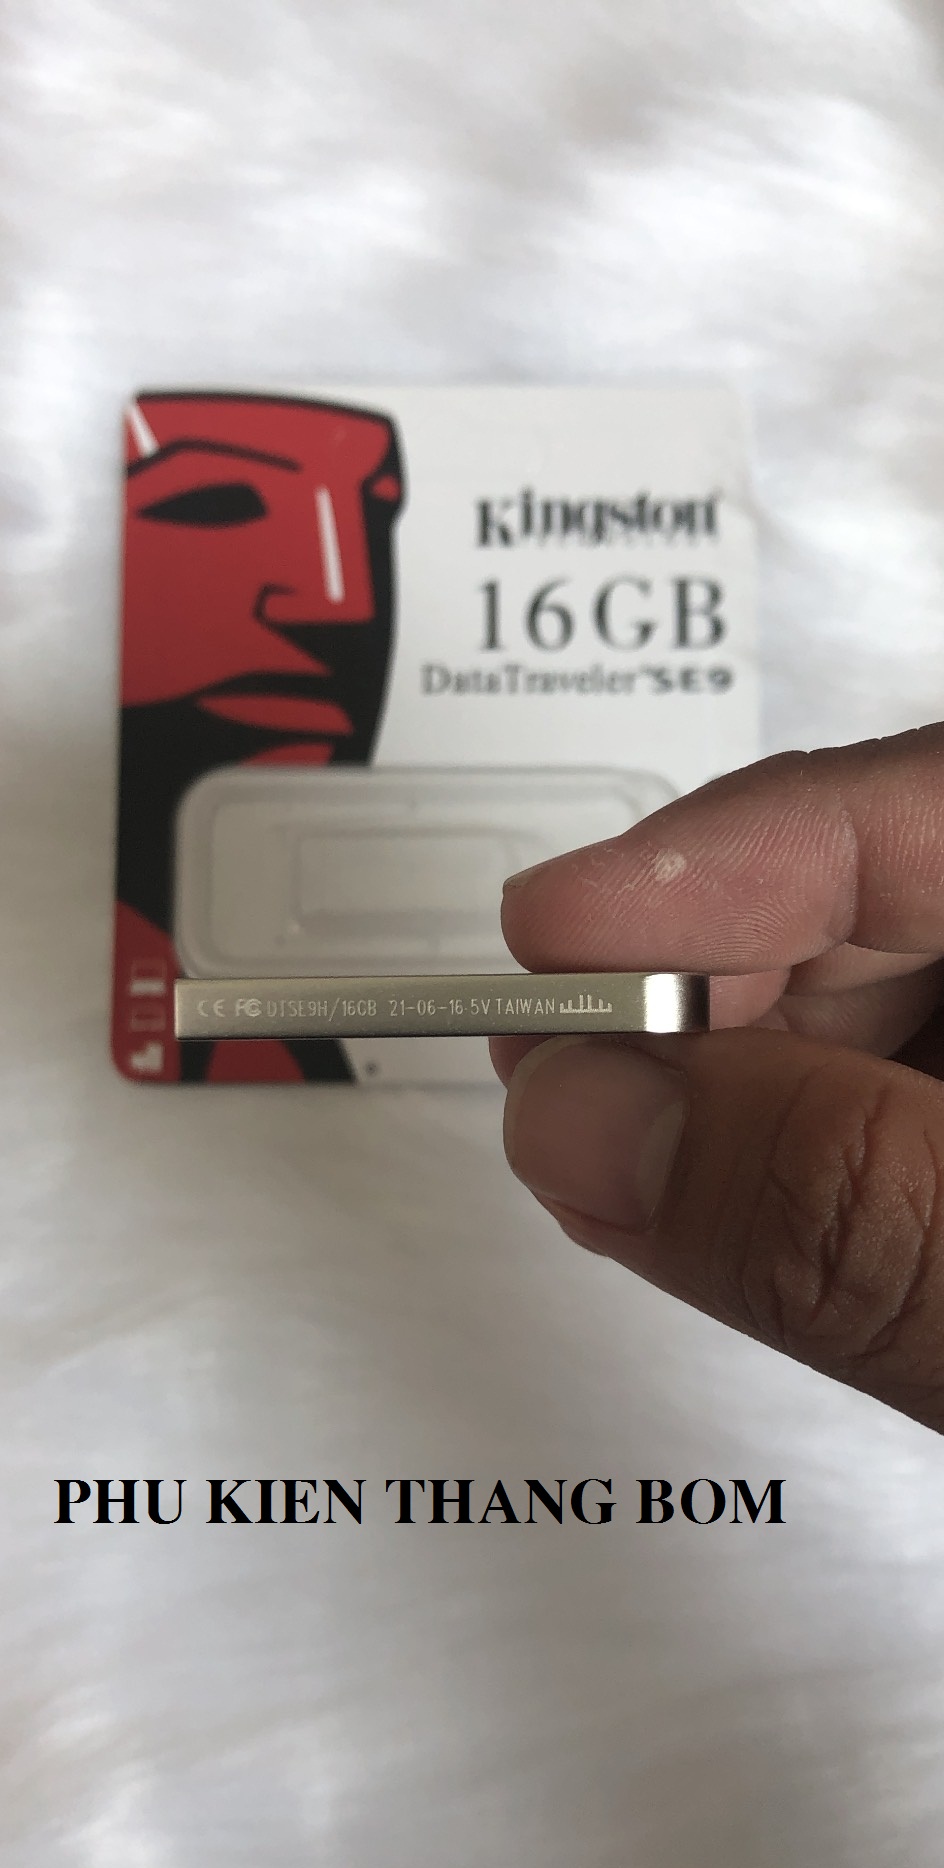 [HCM]USB 4GB Kingston SE9 chống sốc chống nước